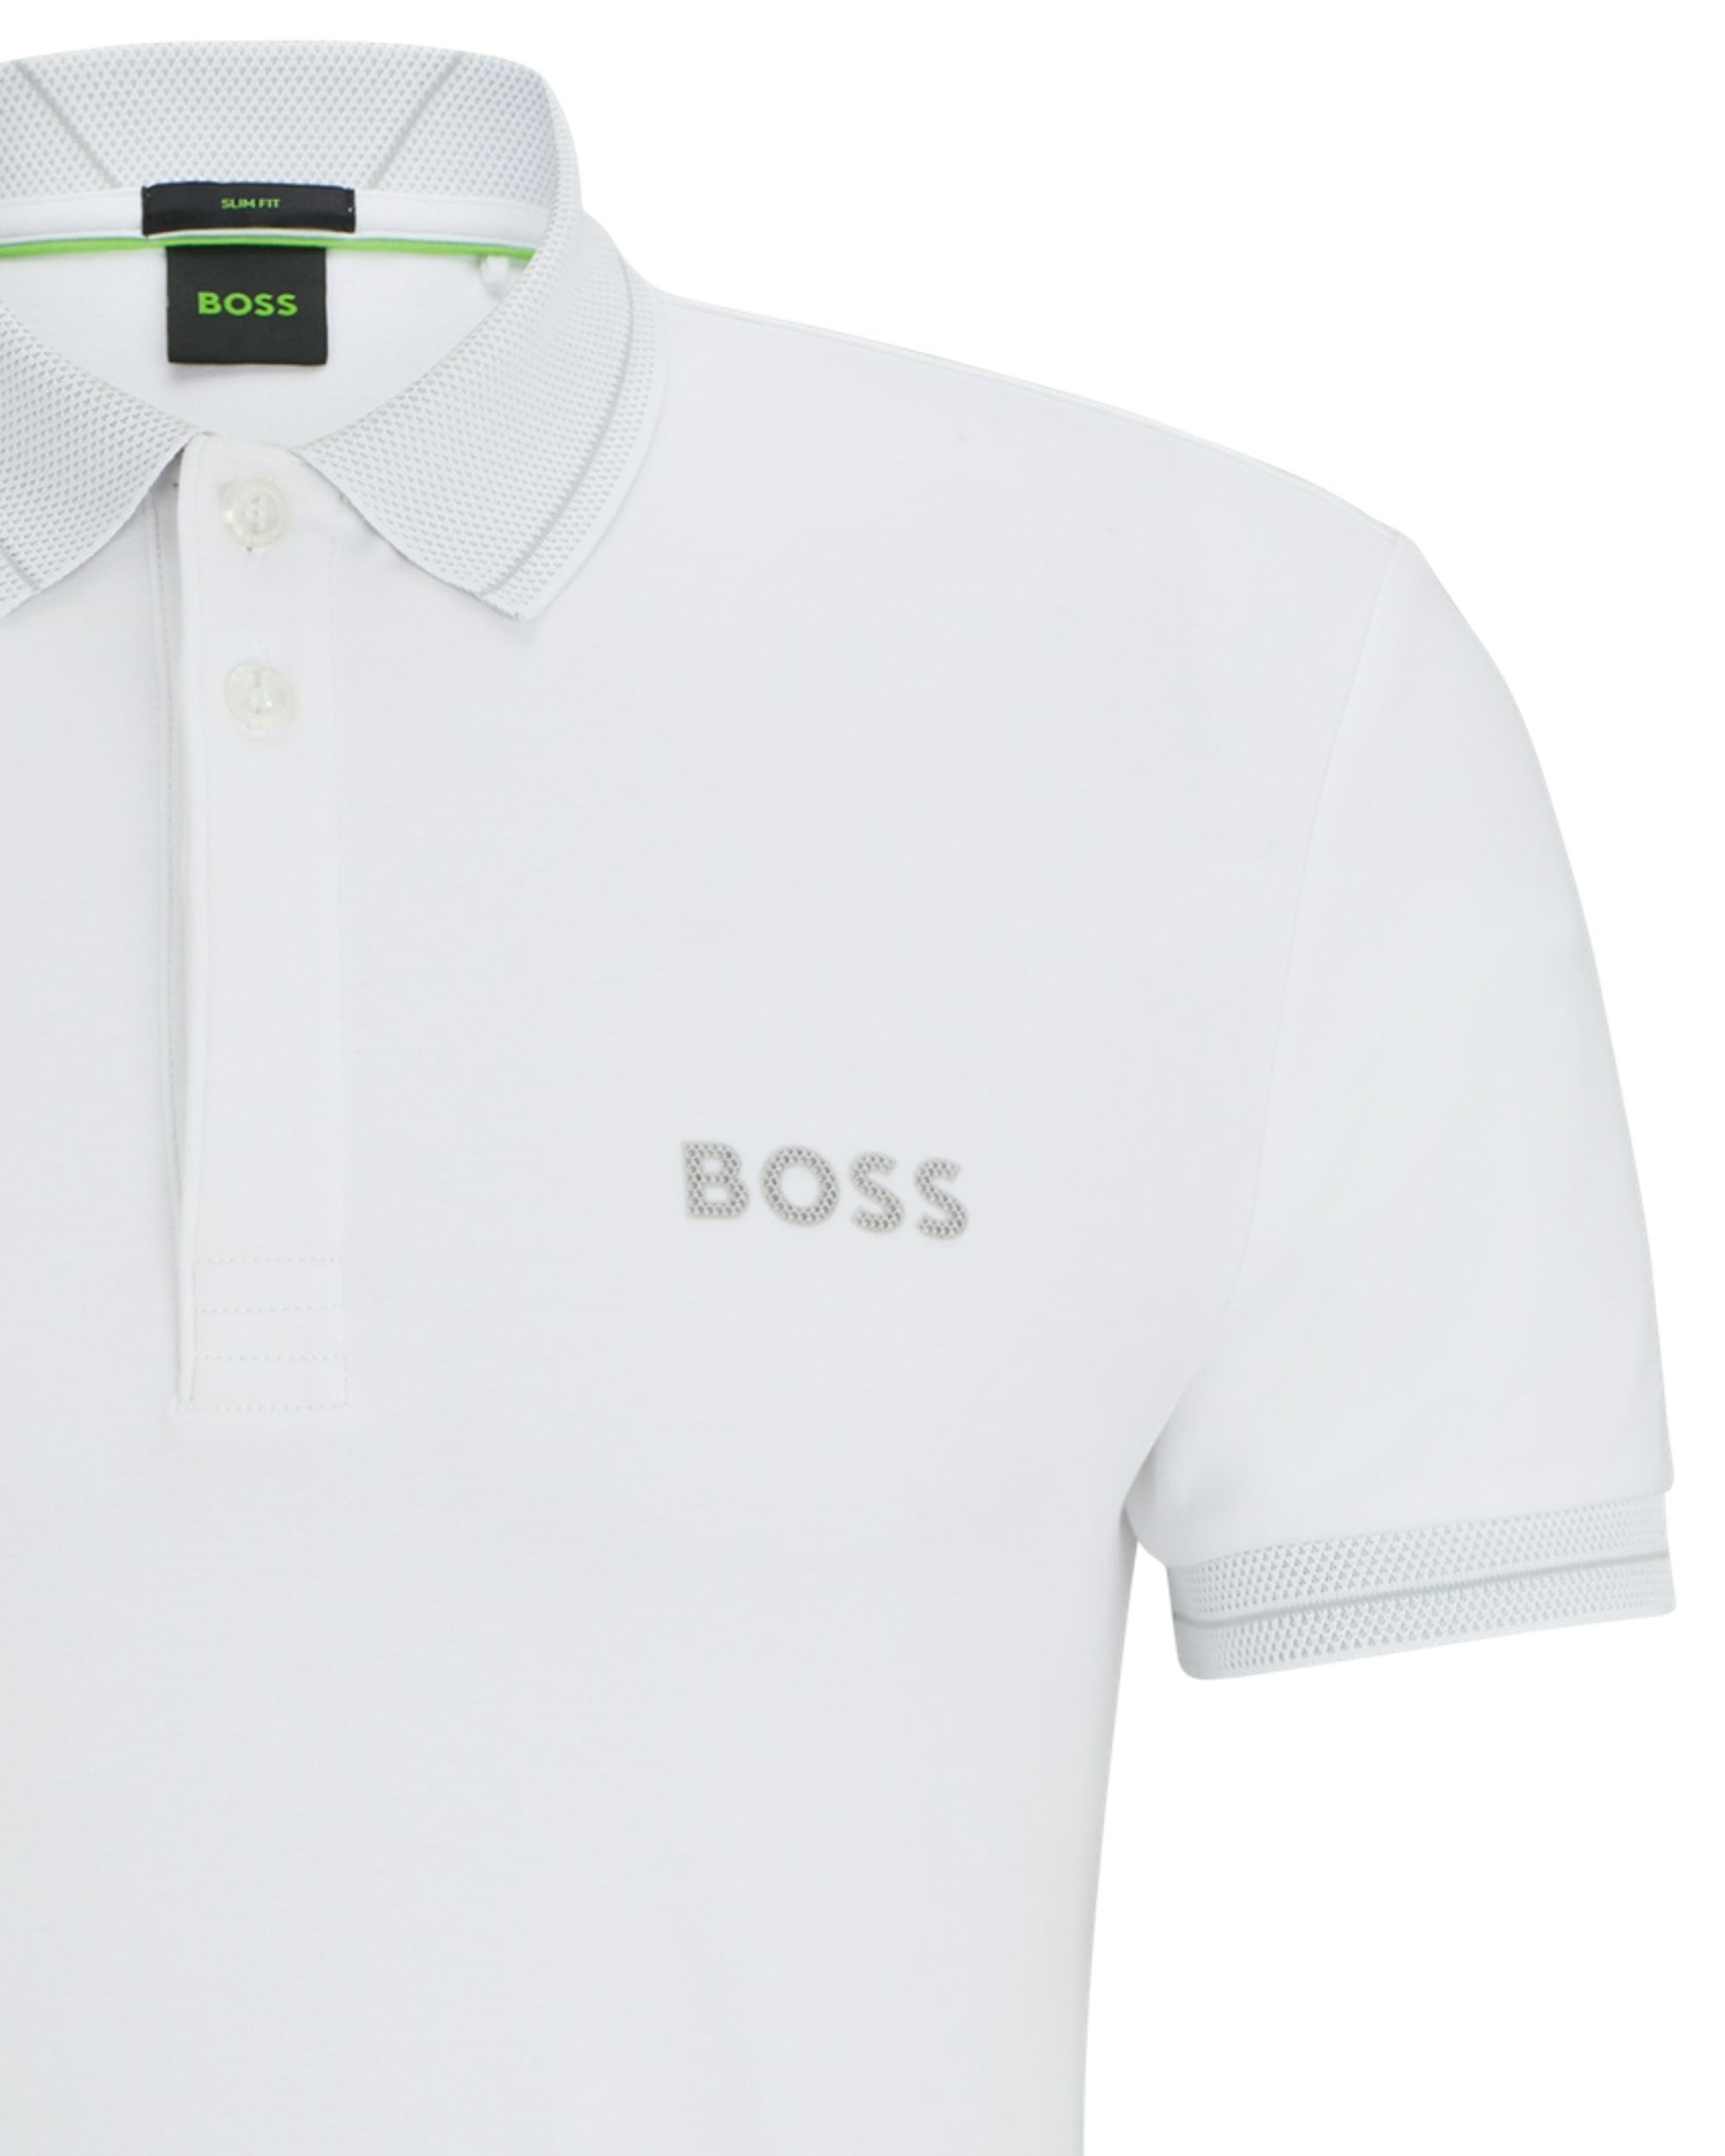 Boss Paule 1 Polo KM Wit 094607-001-L